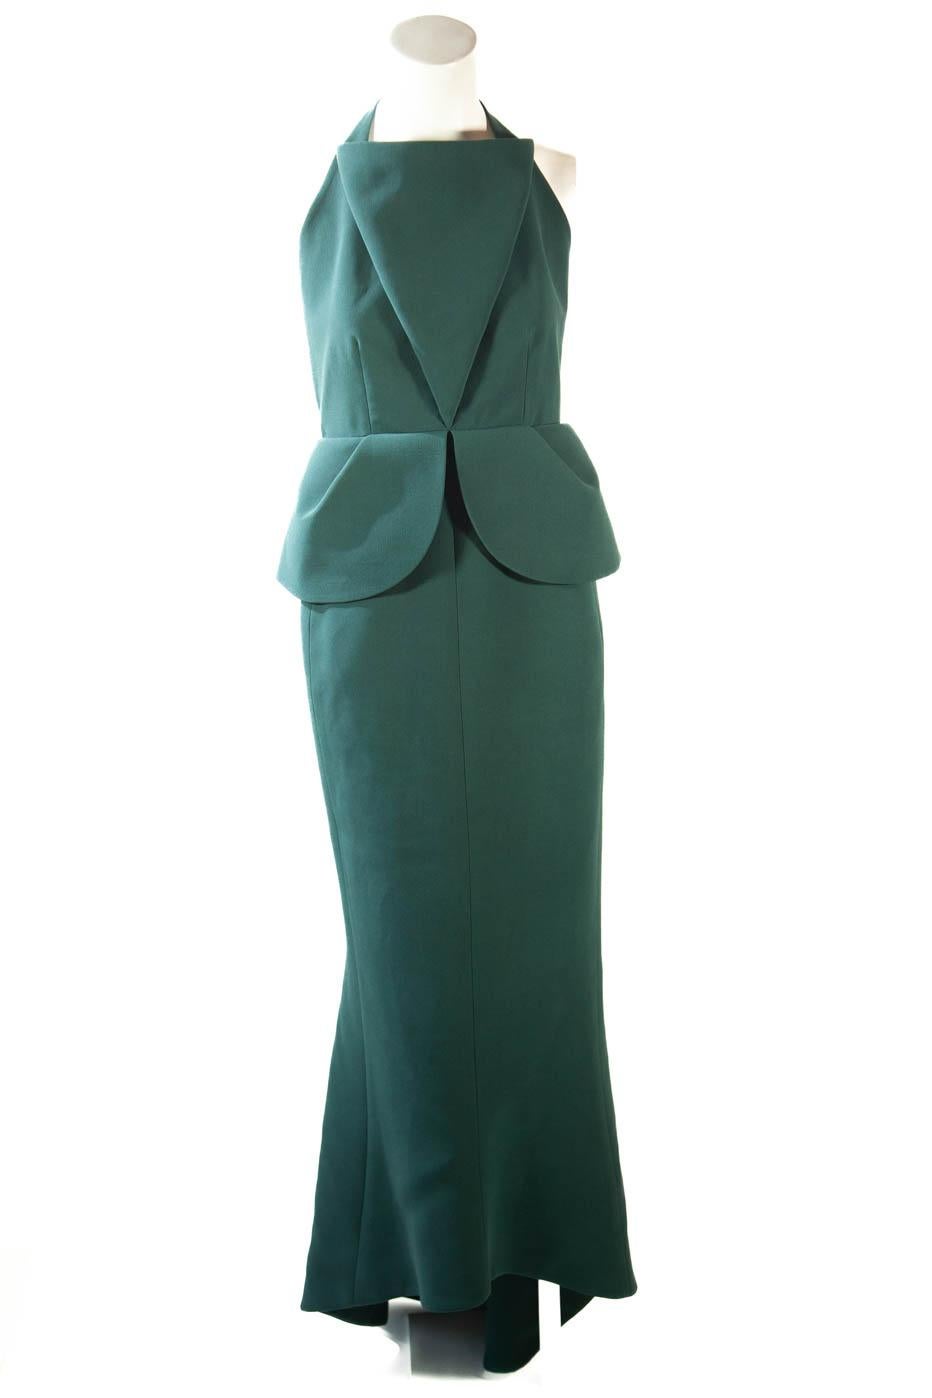 Balenciaga, 2013 Met Gala waldgrün, Kleid getragen von einem Prominenten (bitte anfragen).

Provenienz, bitte anfragen.

